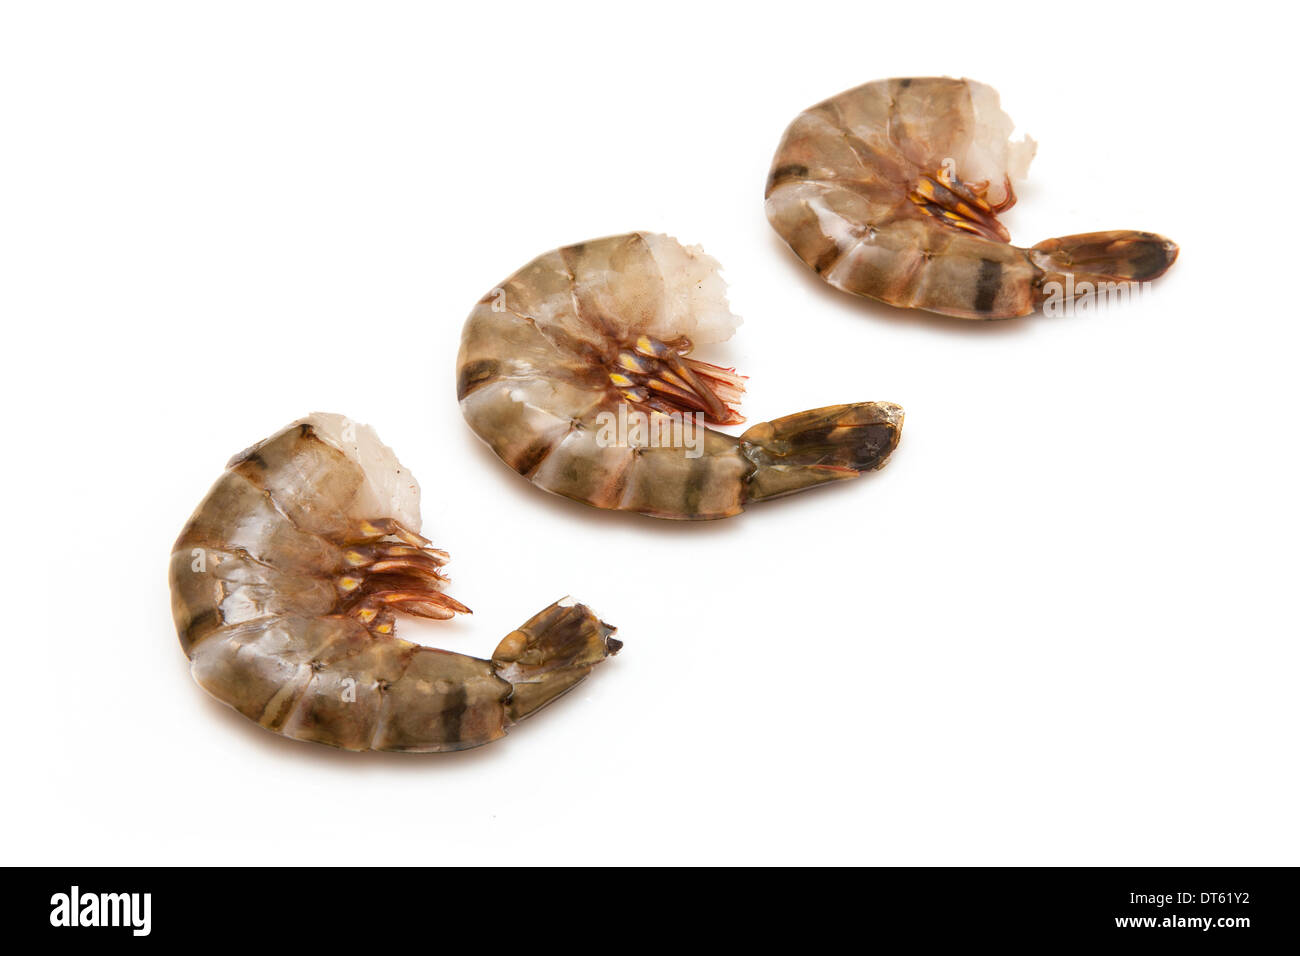 Grande crevette ou tigre asiatique- Crevettes Penaeus monodon. Isolé sur un fond blanc studio. Banque D'Images